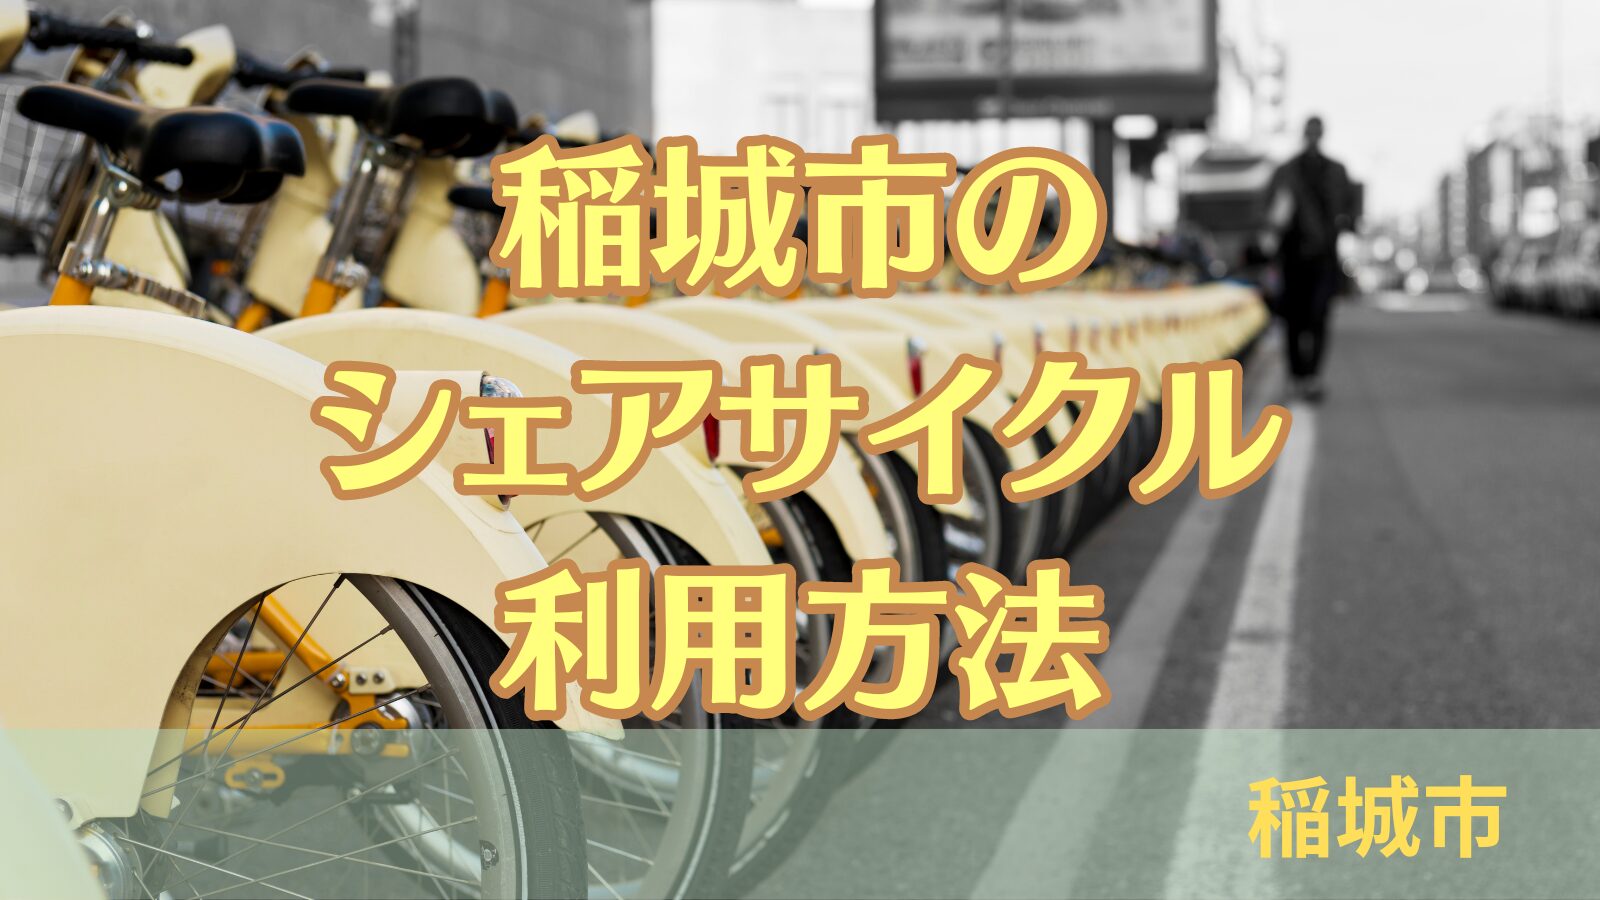 稲城のミカタ「シェアサイクル利用方法」